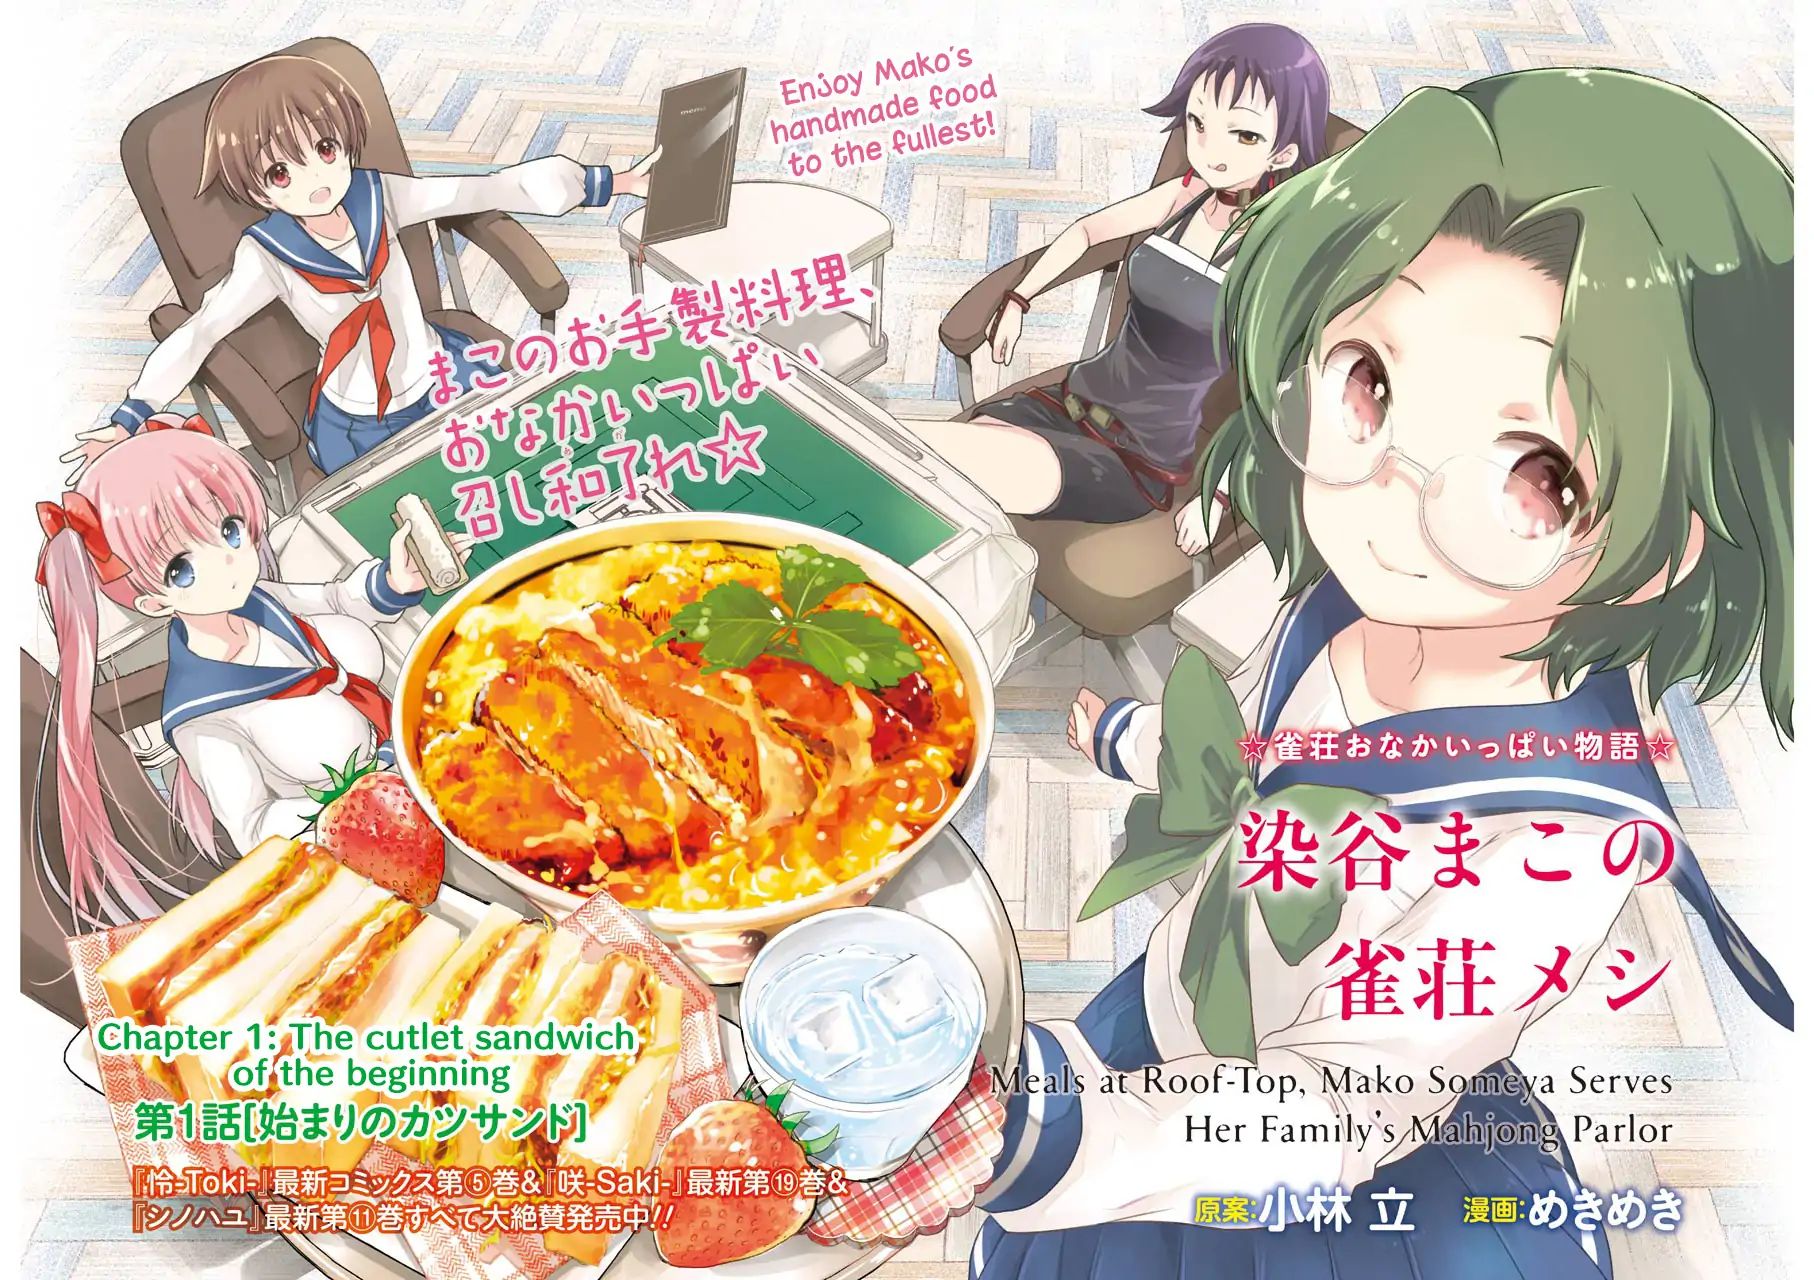 Someya Mako's Mahjong Parlor Food - Page 2